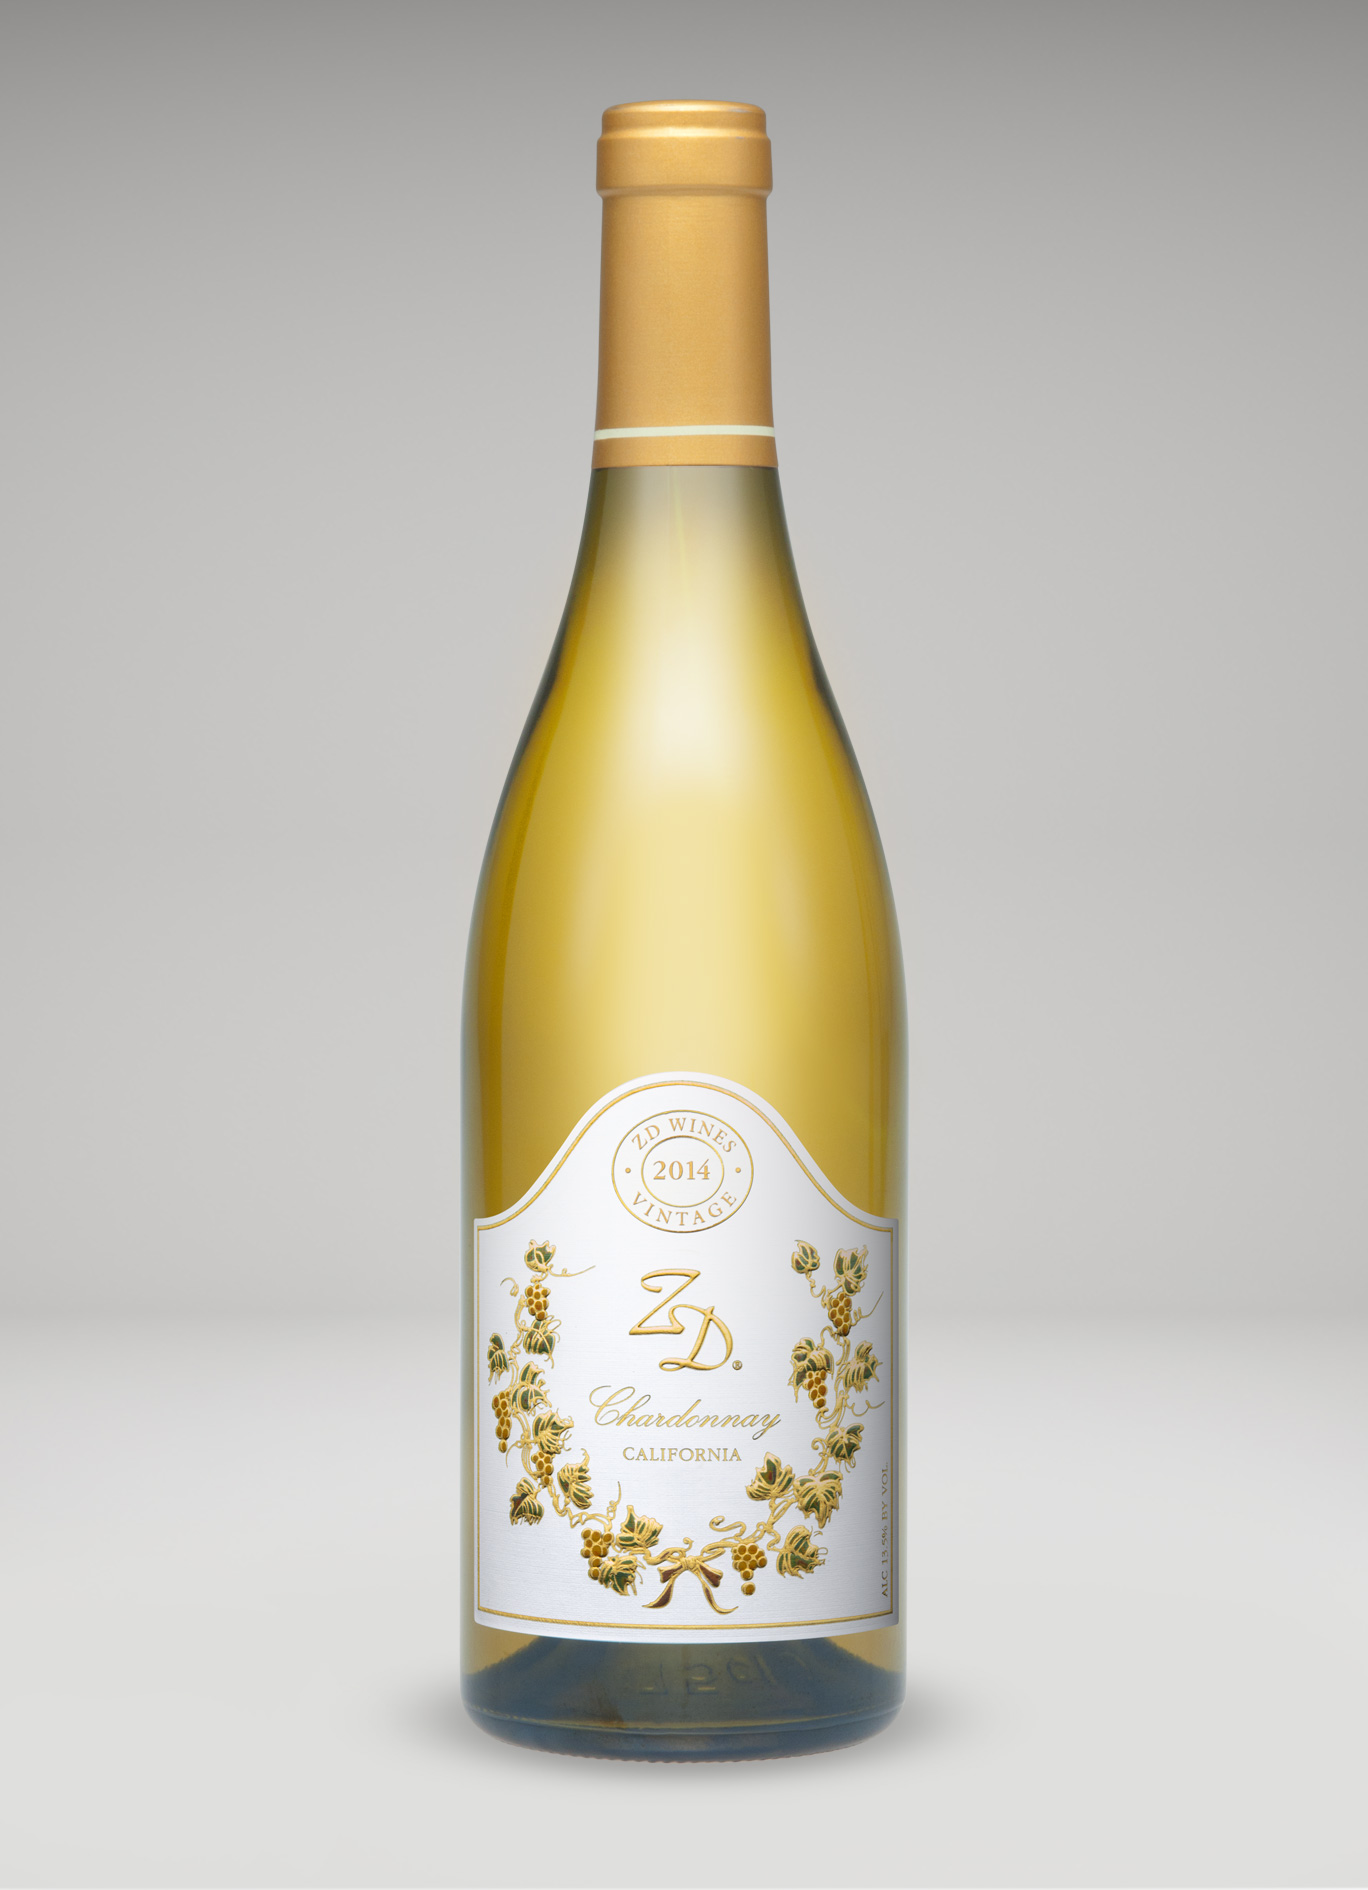 A bottle of 2014 ZD Chardonnay